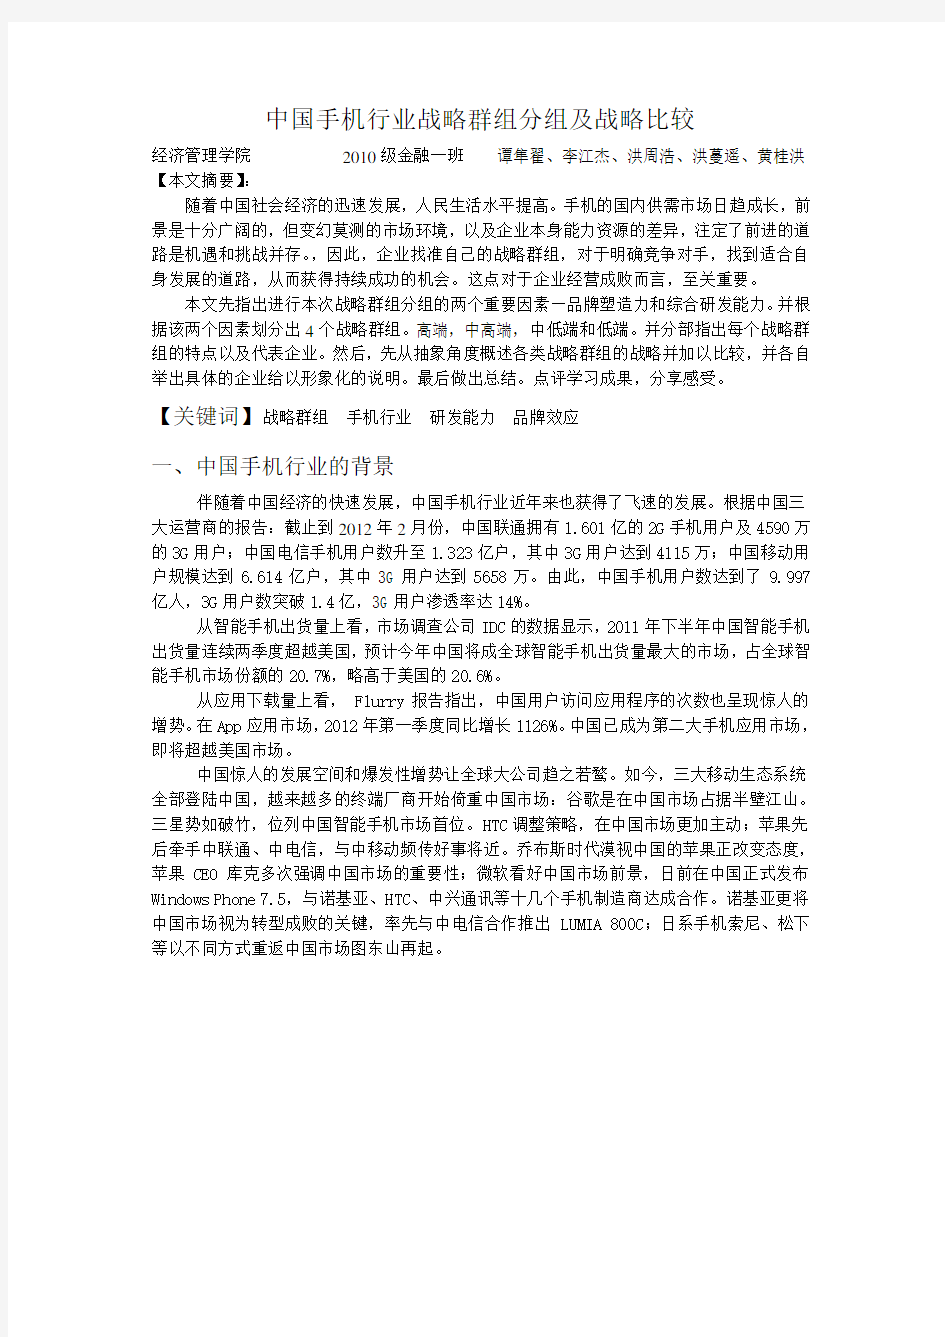 中国手机行业战略群组分组及战略比较(最终版)